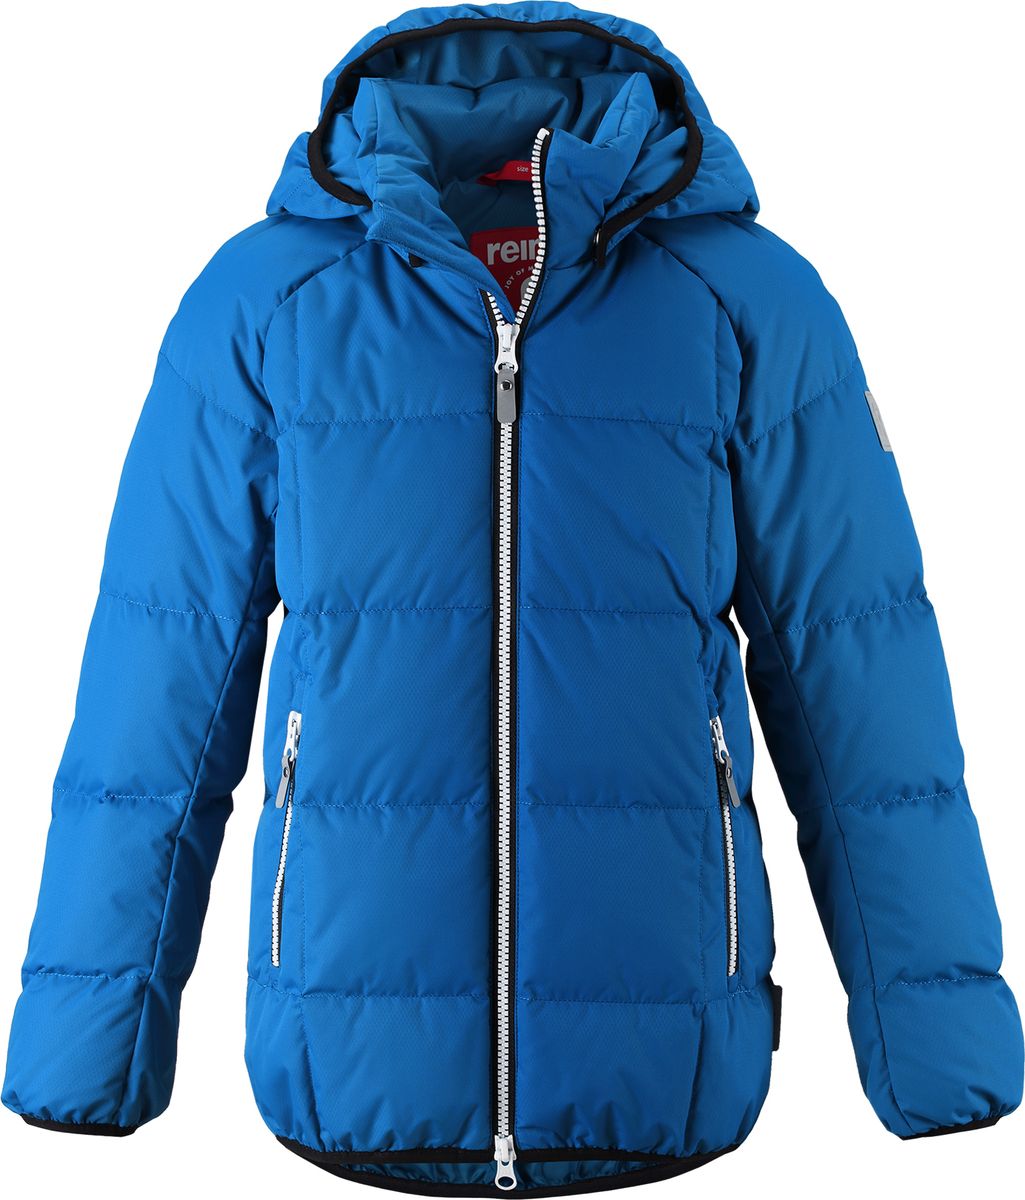 Куртка для мальчика Reima Jord, цвет: синий. 5313596680. Размер 164